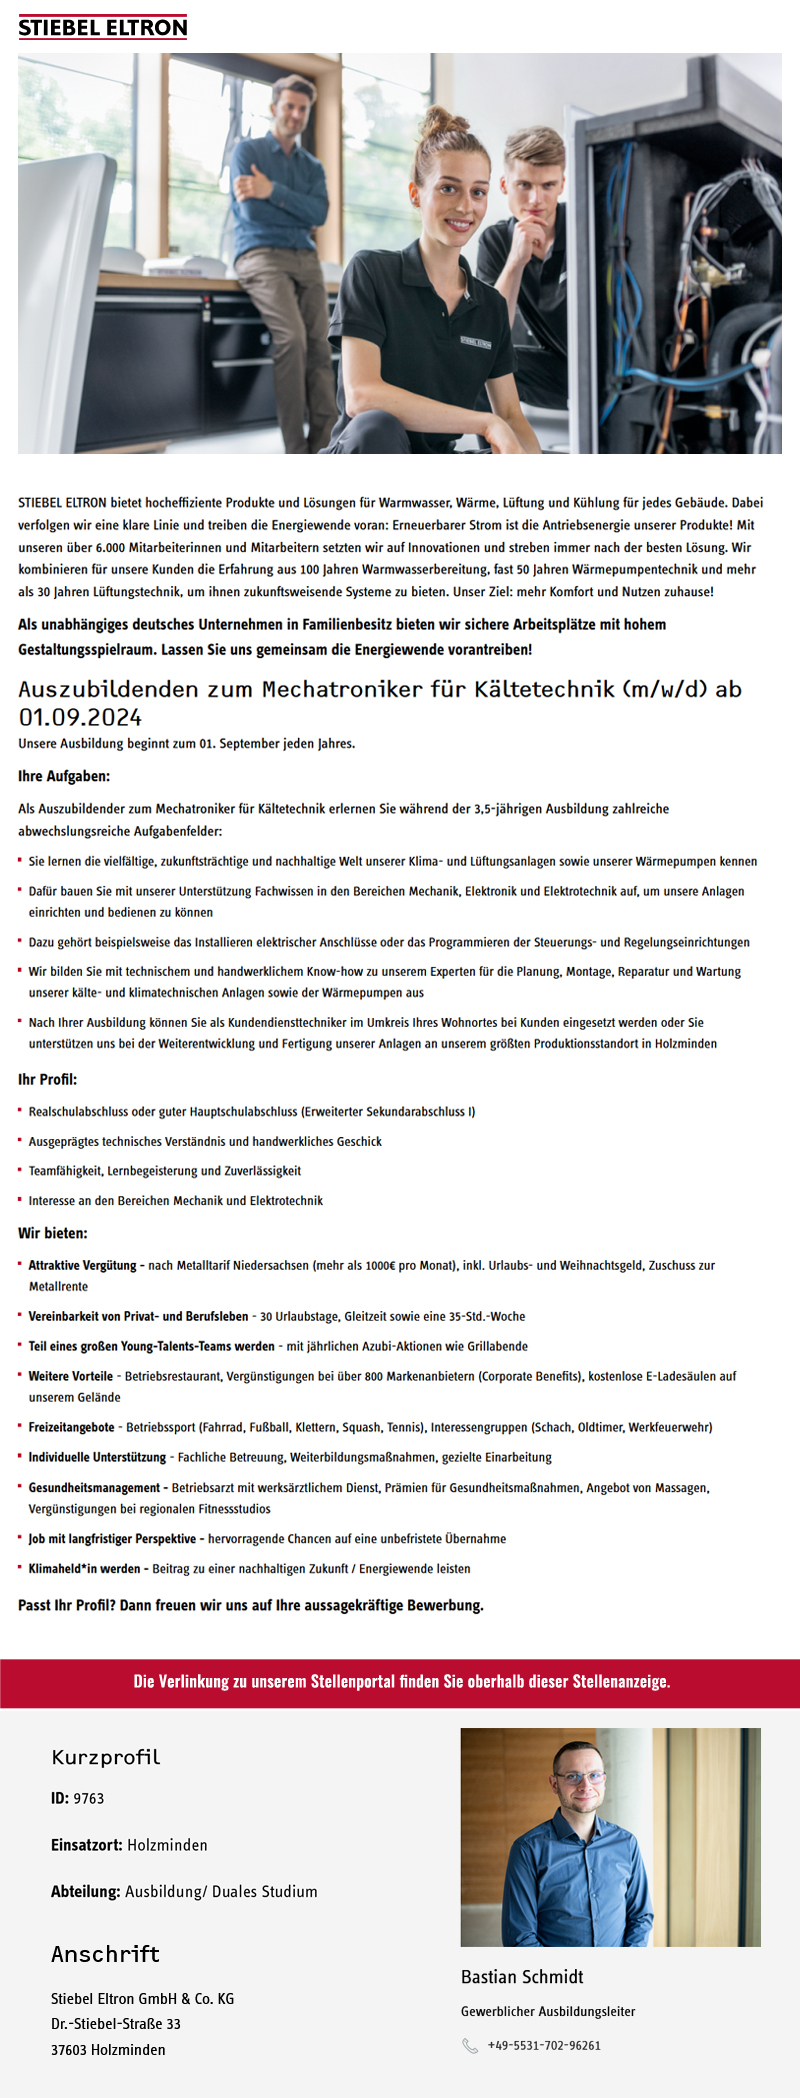  Auszubildenden zum Mechatroniker für Kältetechnik (m/w/d) ab 01.09.2024 - Stiebel Eltron GmbH & Co. KG 